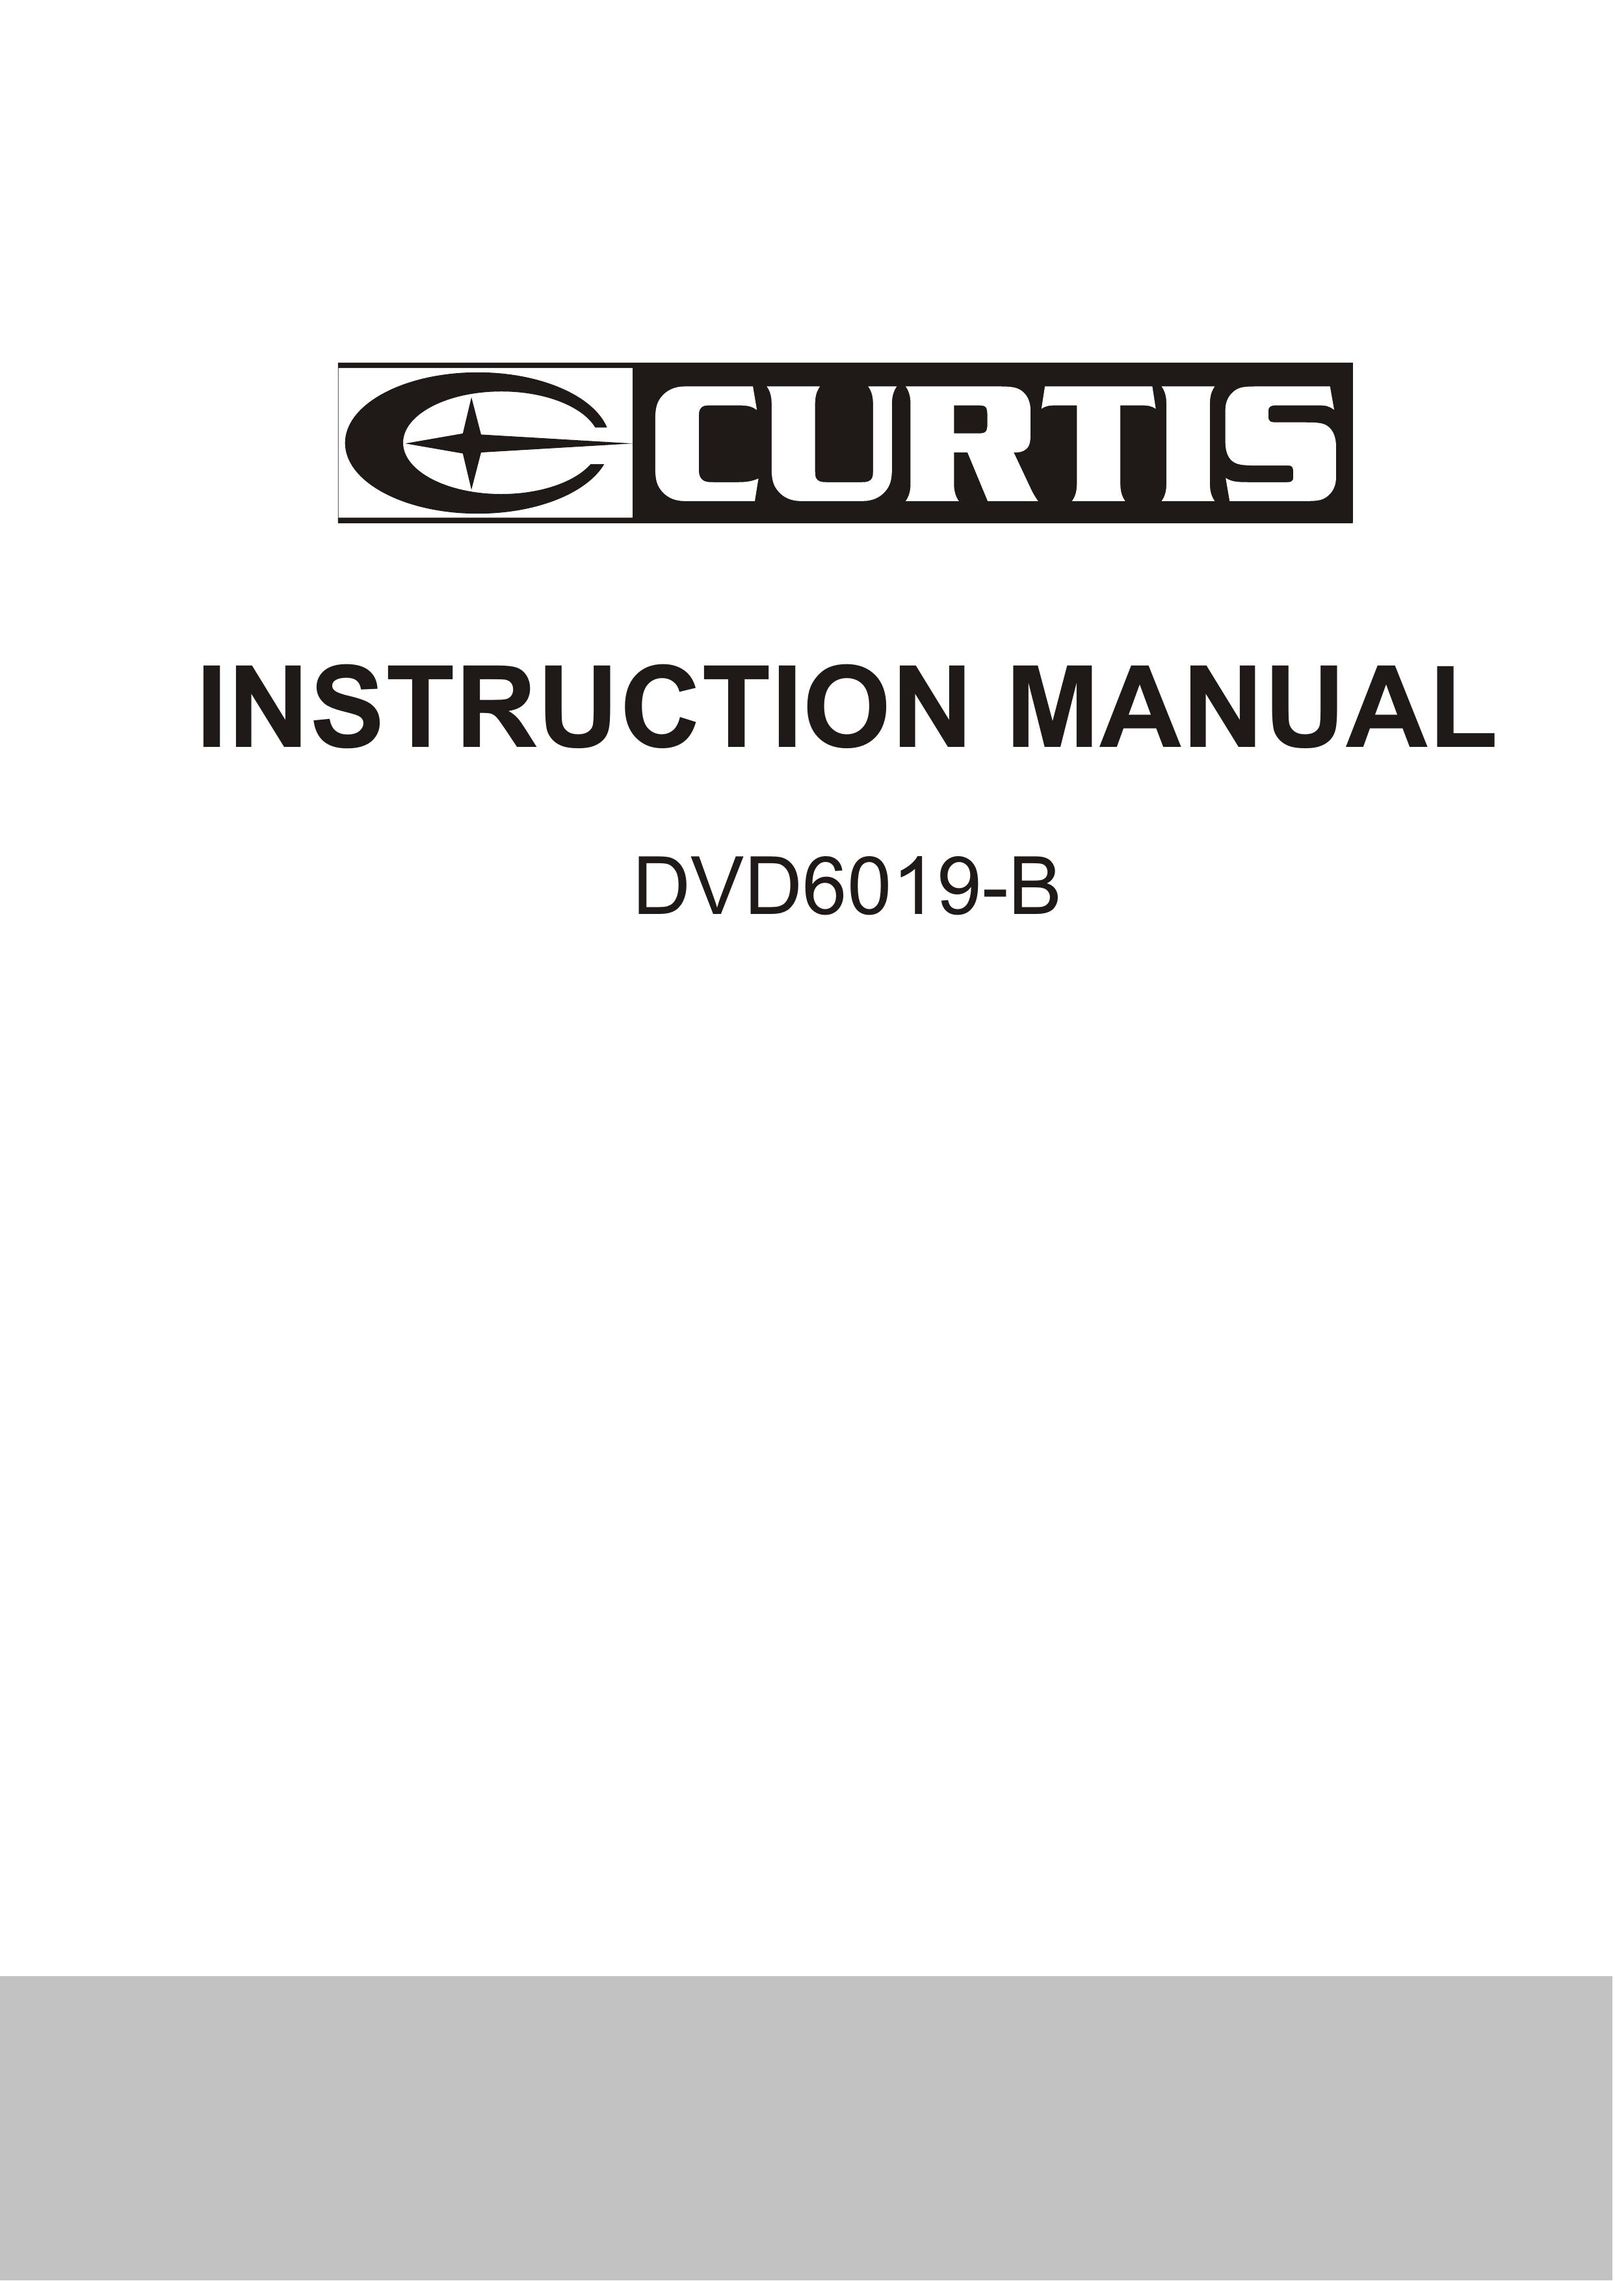 Curtis DVD6019-B DVD Player User Manual